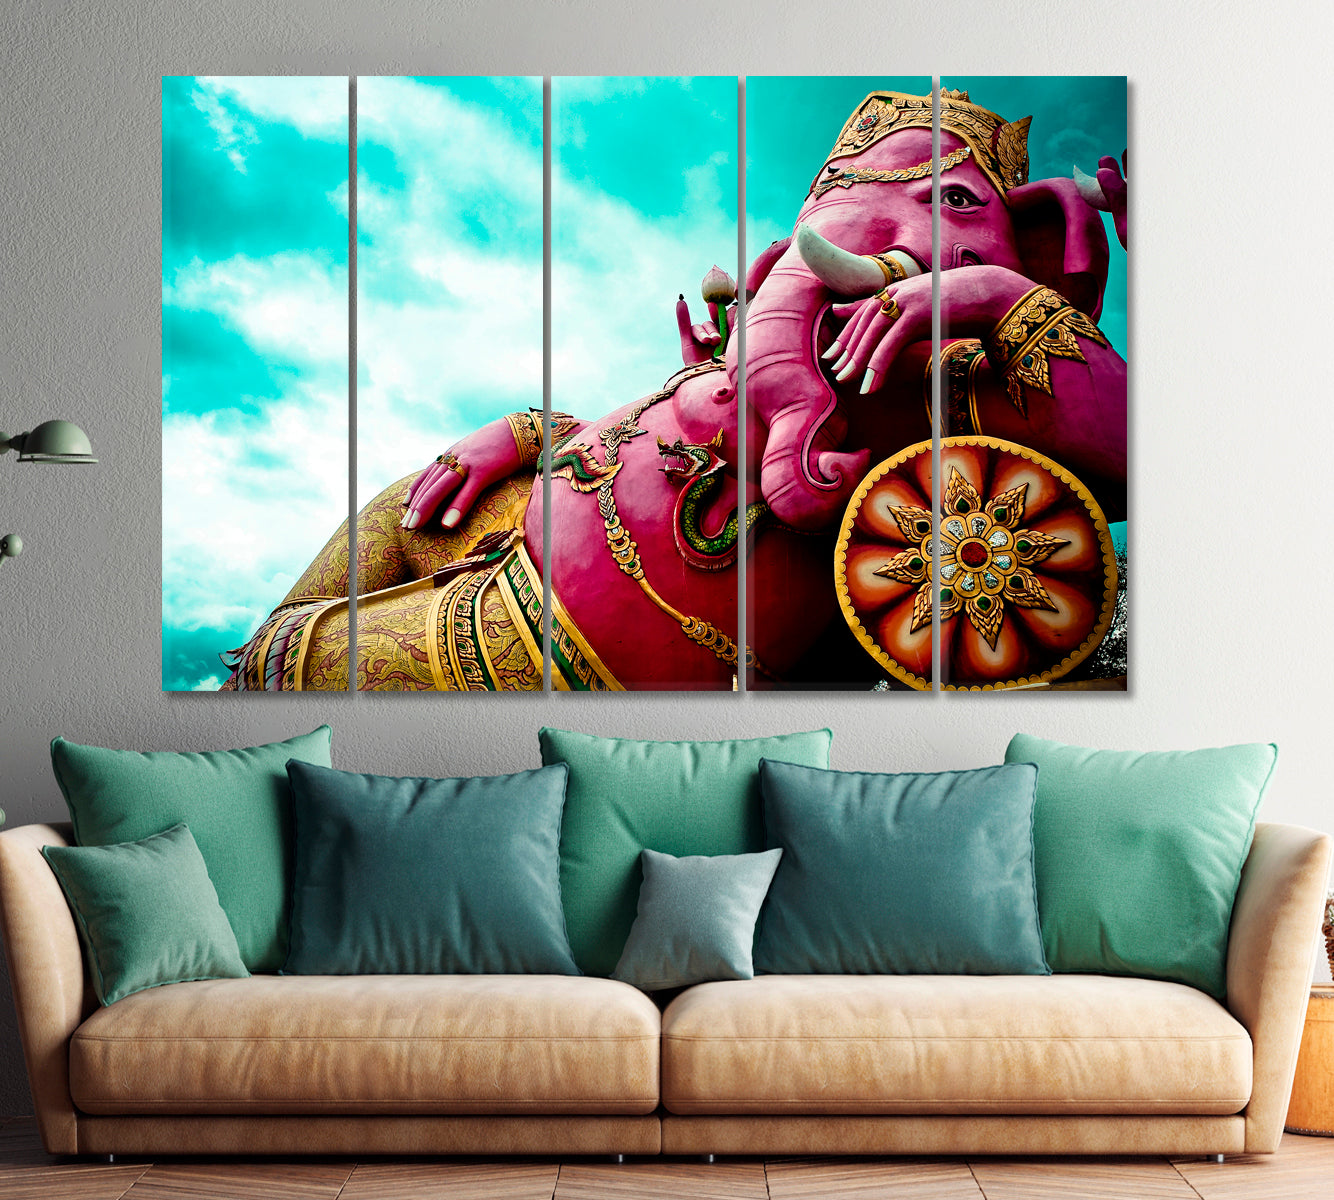 Ganesha India God Pink Elephant Buddha Religious Modern Art Artesty 5 panels 36" x 24" 